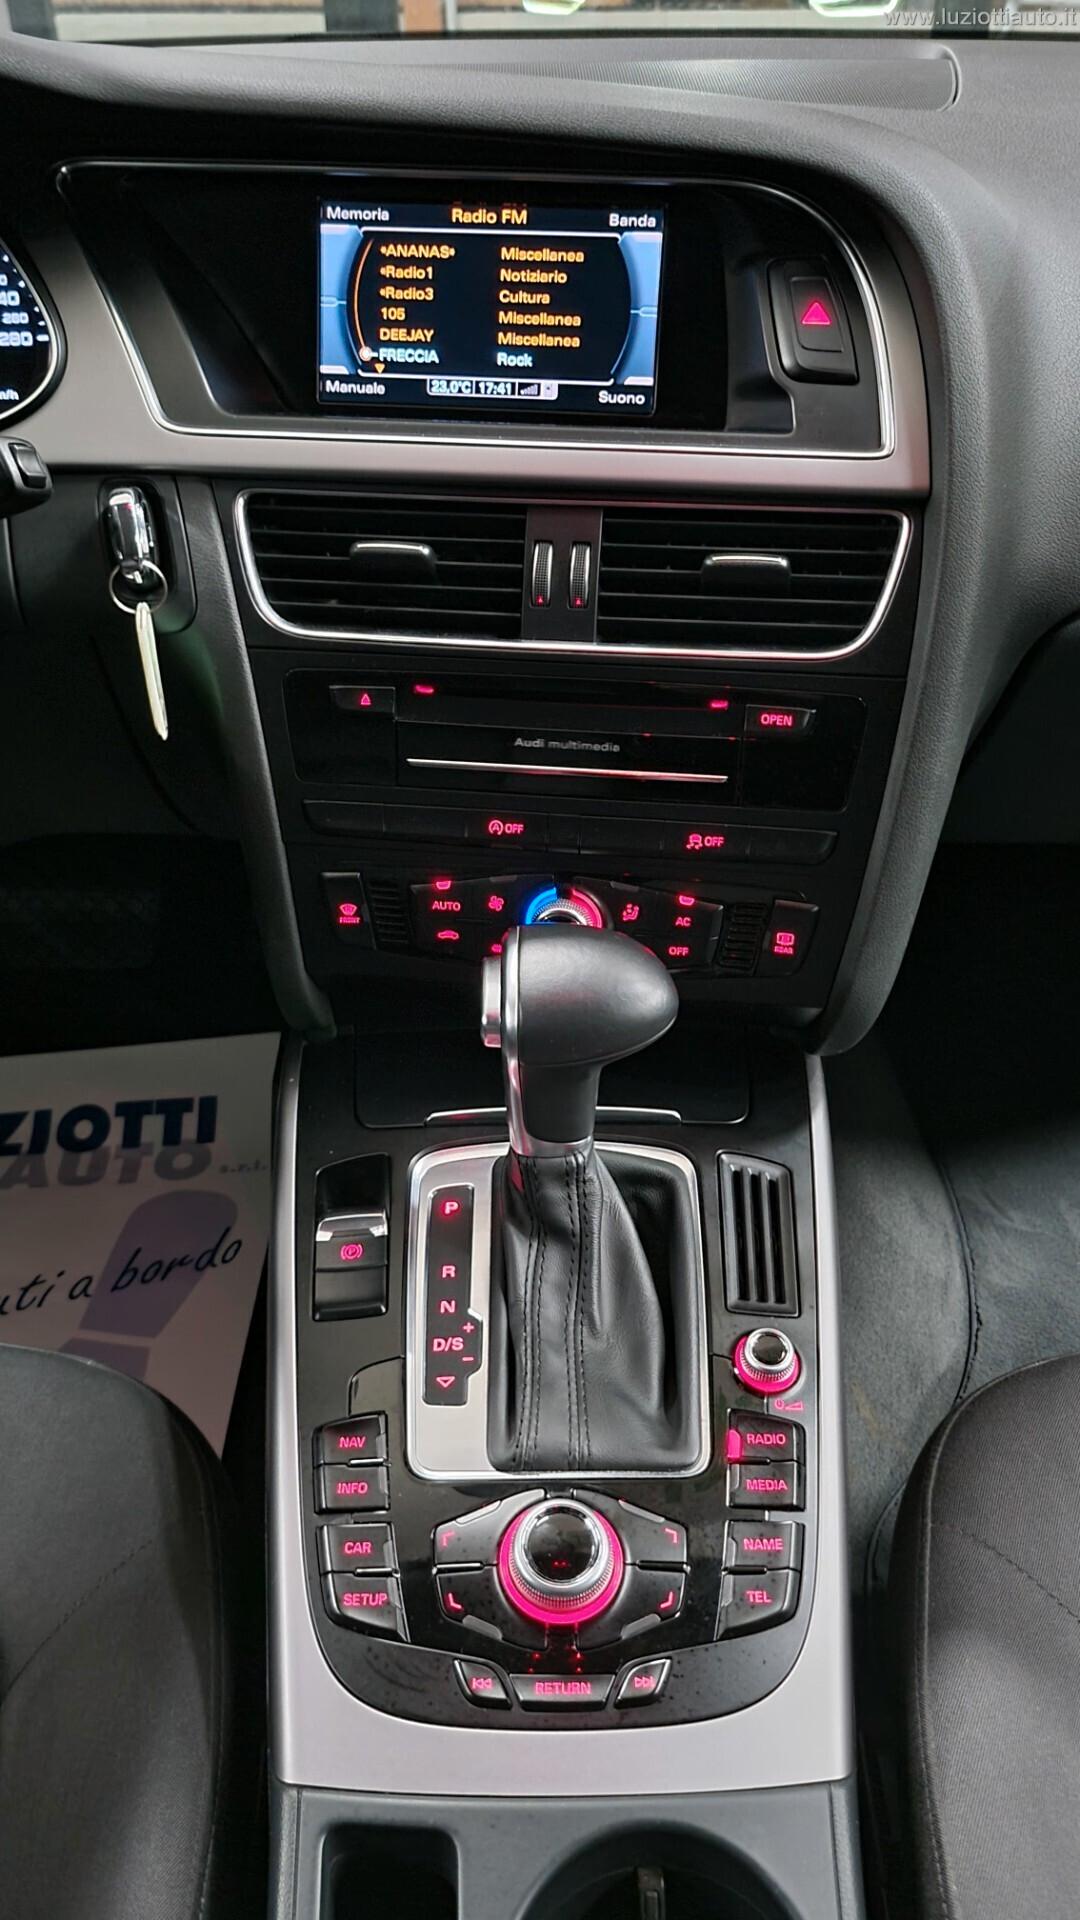 Audi A4 Avant 2.0 TDI 150 CV multitronic Advanced